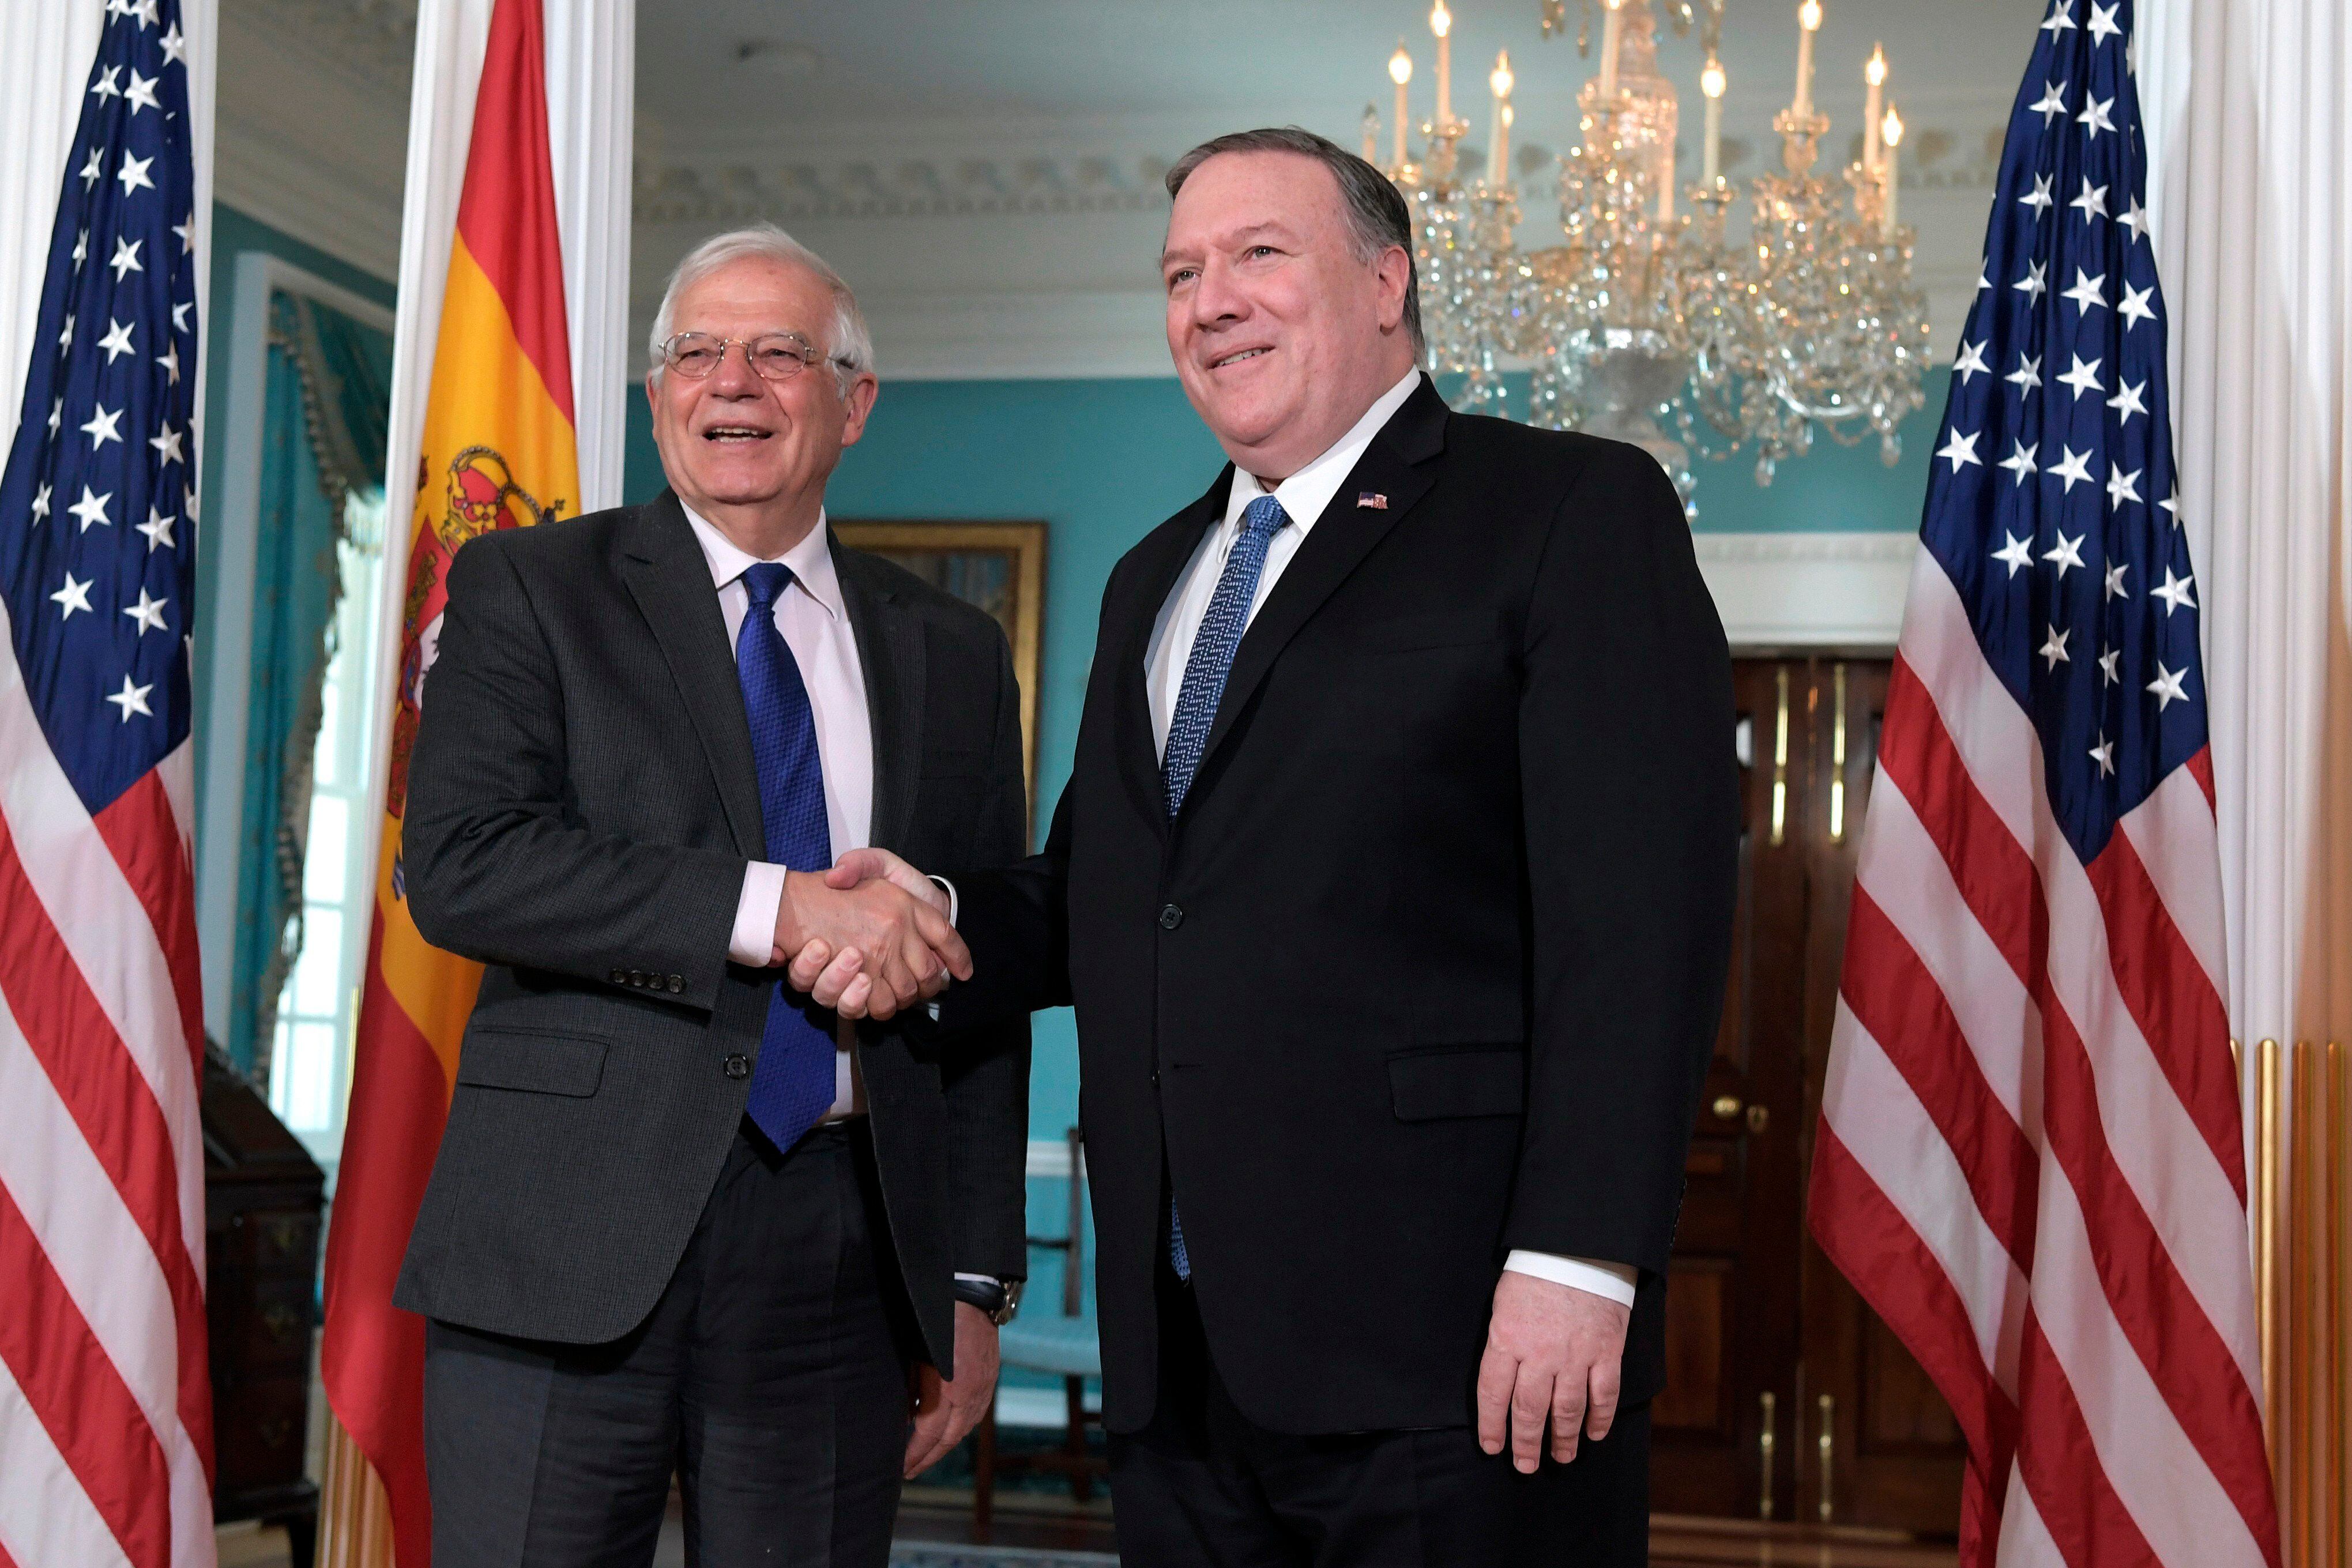 El ministro español de Exteriores, Josep Borrell (izq), y el secretario de Estado de EE.UU., Mike Pompeo (dcha), posaban para una fotografía tras reunirse en Washington, DC (EE.UU.), en abril de 2019. EFE/Lenin Nolly/Archivo 